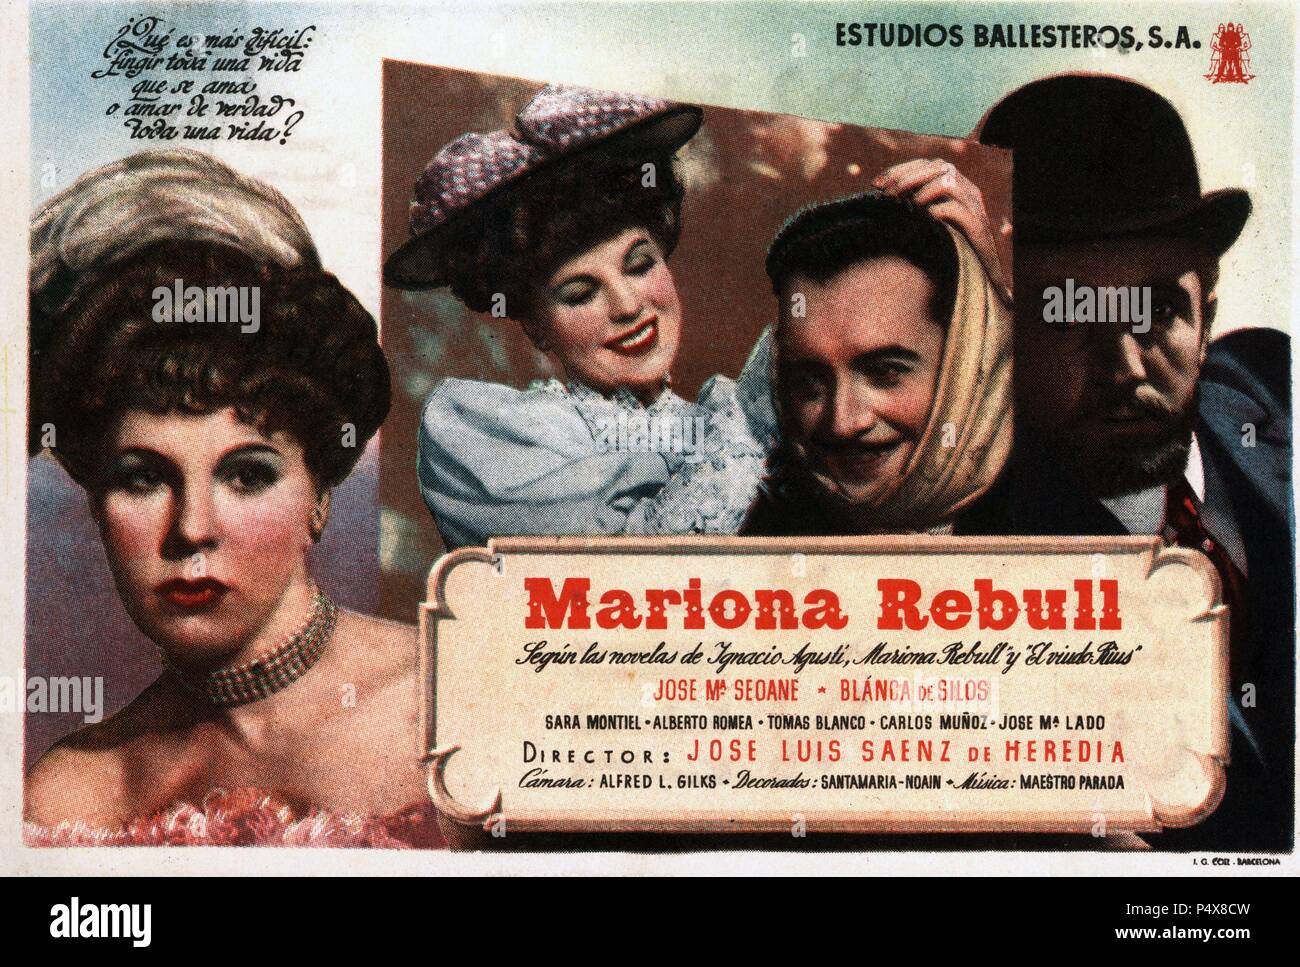 Cartel de la película Mariona Rebull, con José María Seoane, Blanca de Silos y Sara Montiel, dirigida por José Luis Sáenz de Heredia. España, 1948. Stock Photo